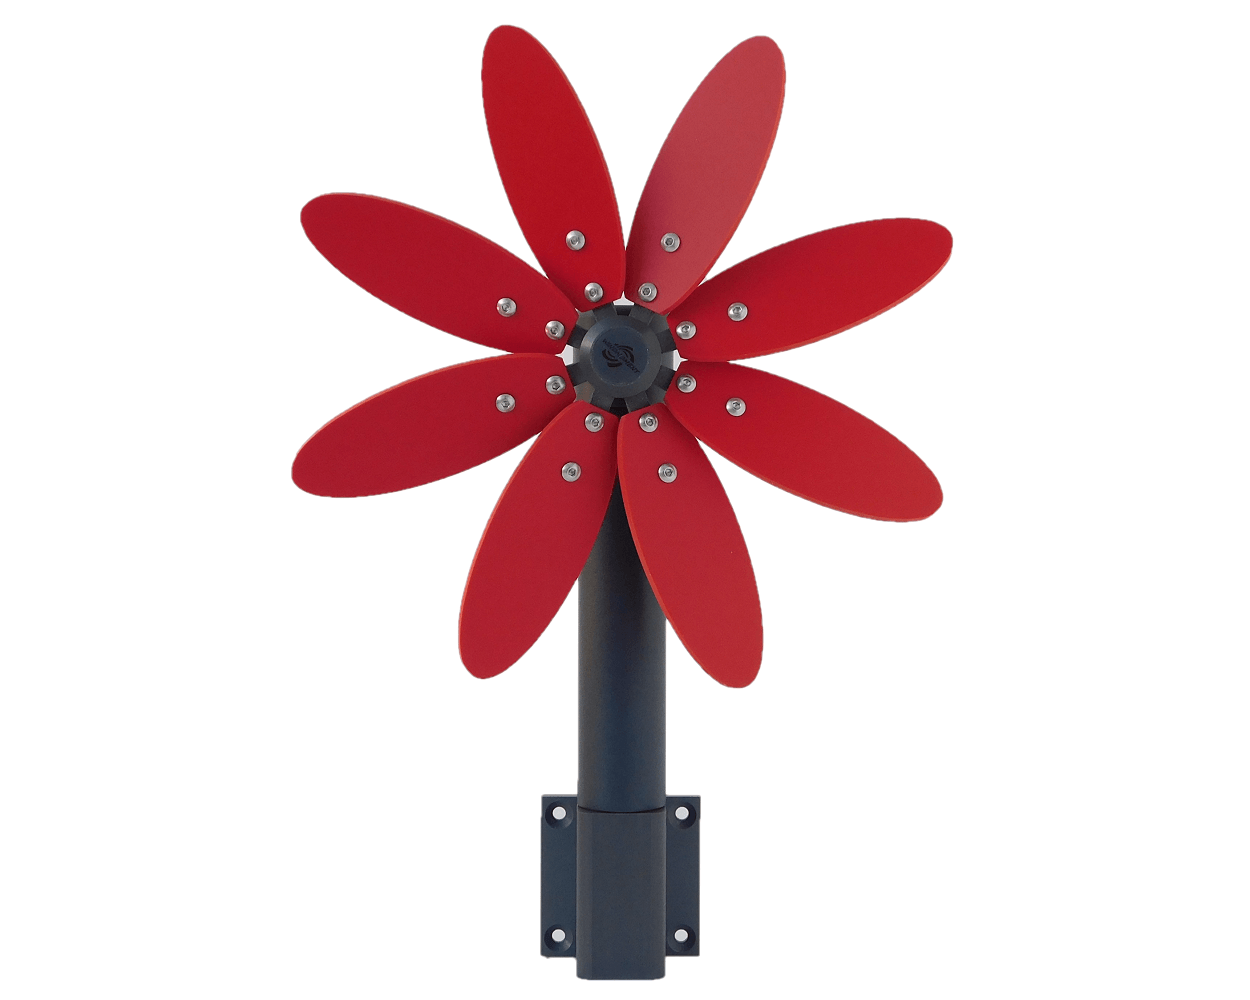 Kleines rotes Deko-Windrad mit acht roten Flügeln. Das Windrad ist an einem grauen Rohr befestigt an dessen Ende ein quadratischer Wandhalter angeschraubt ist.